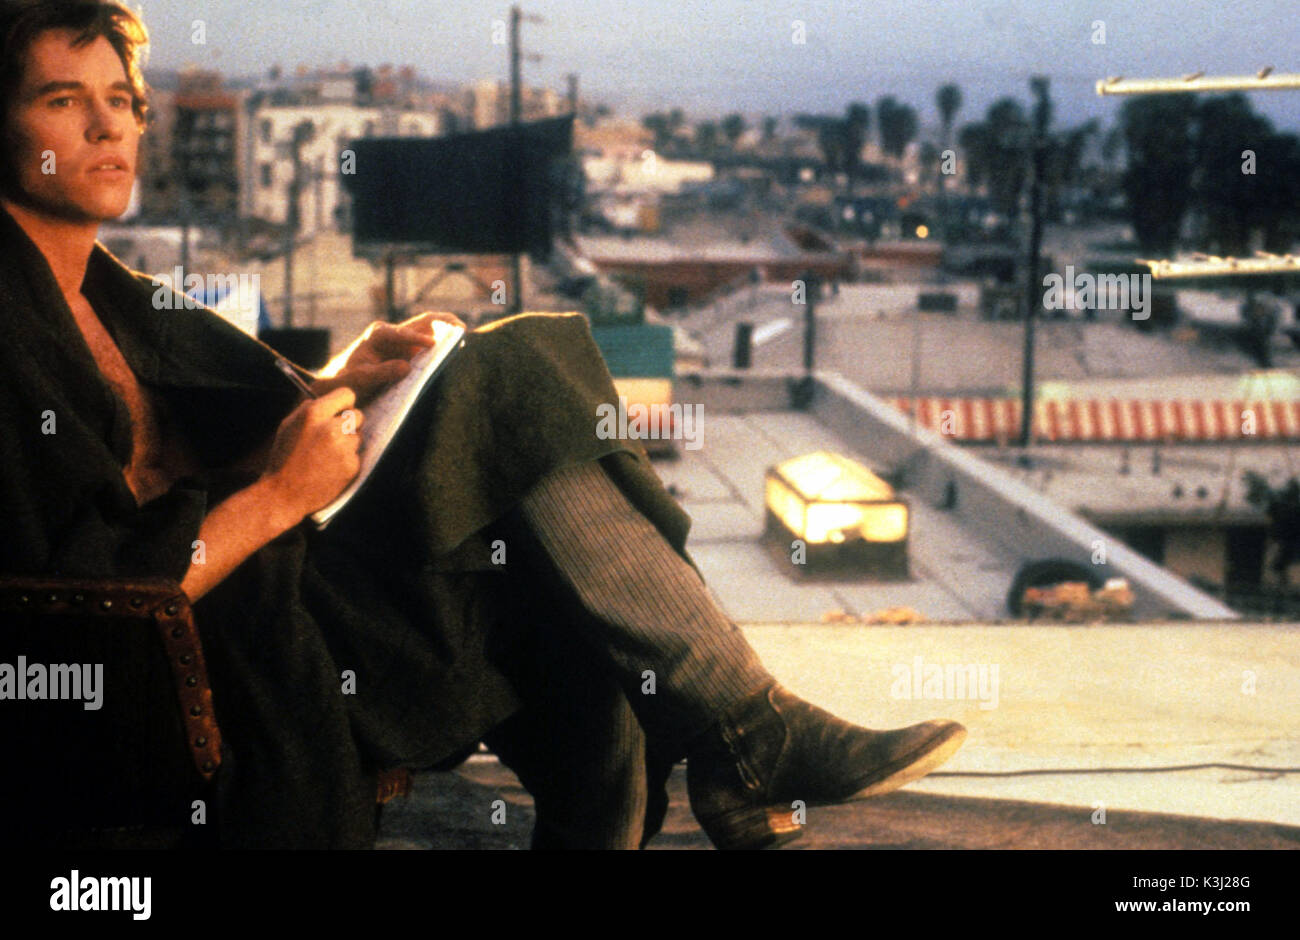 THE DOORS VAL KILMER as Jim Morrison     Date: 1991 Stock Photo